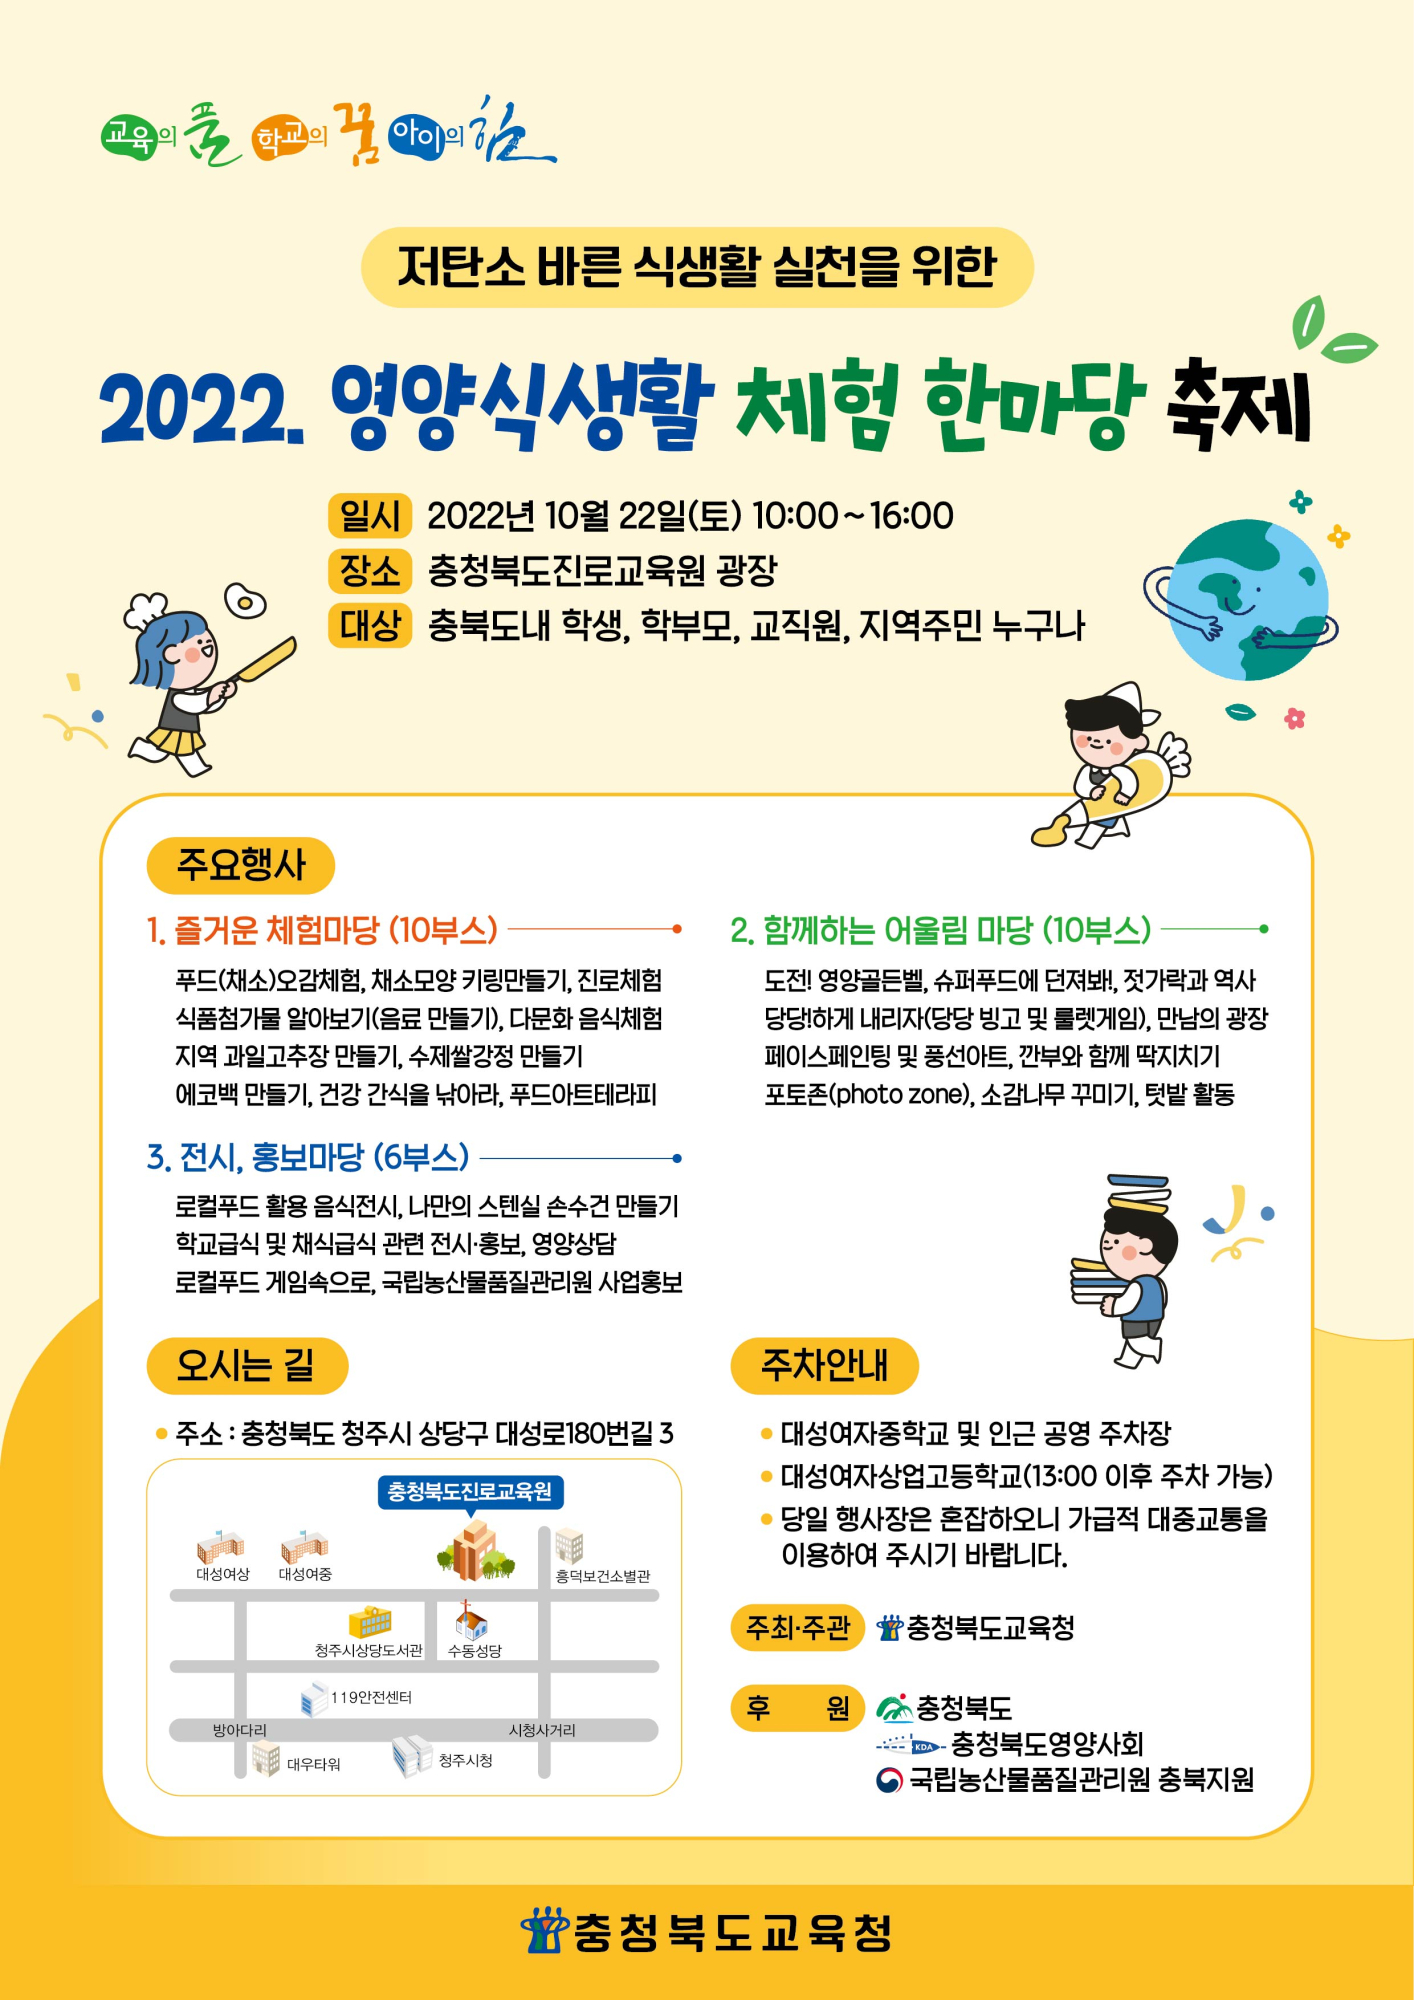 ★(붙임3) 2022. 영양식생활체험한마당 안내장